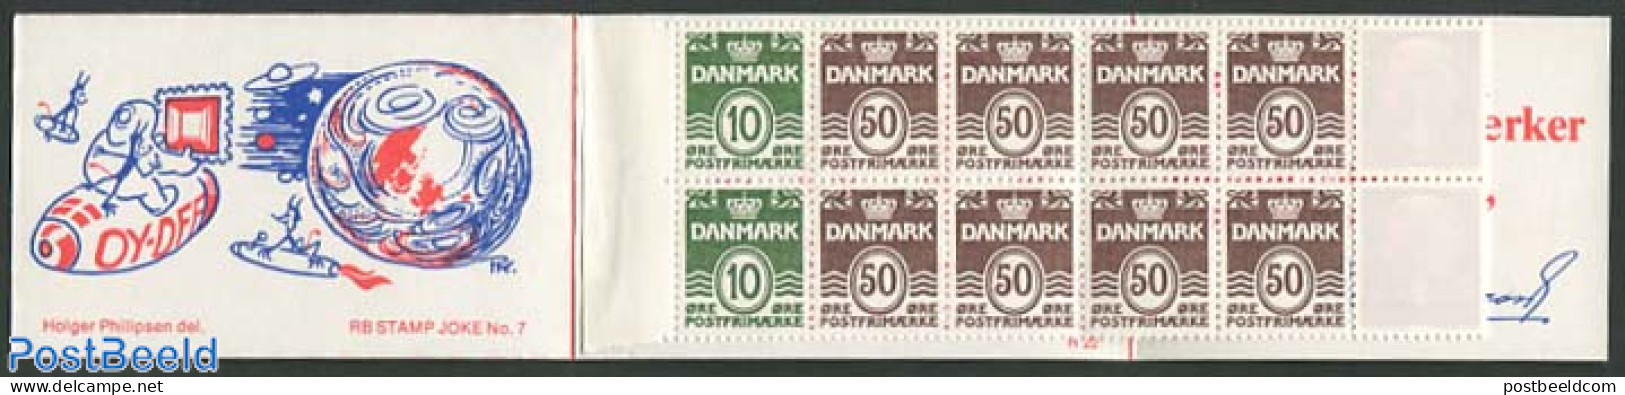 Denmark 1981 Definitives Booklet, Mint NH, Stamp Booklets - Unused Stamps